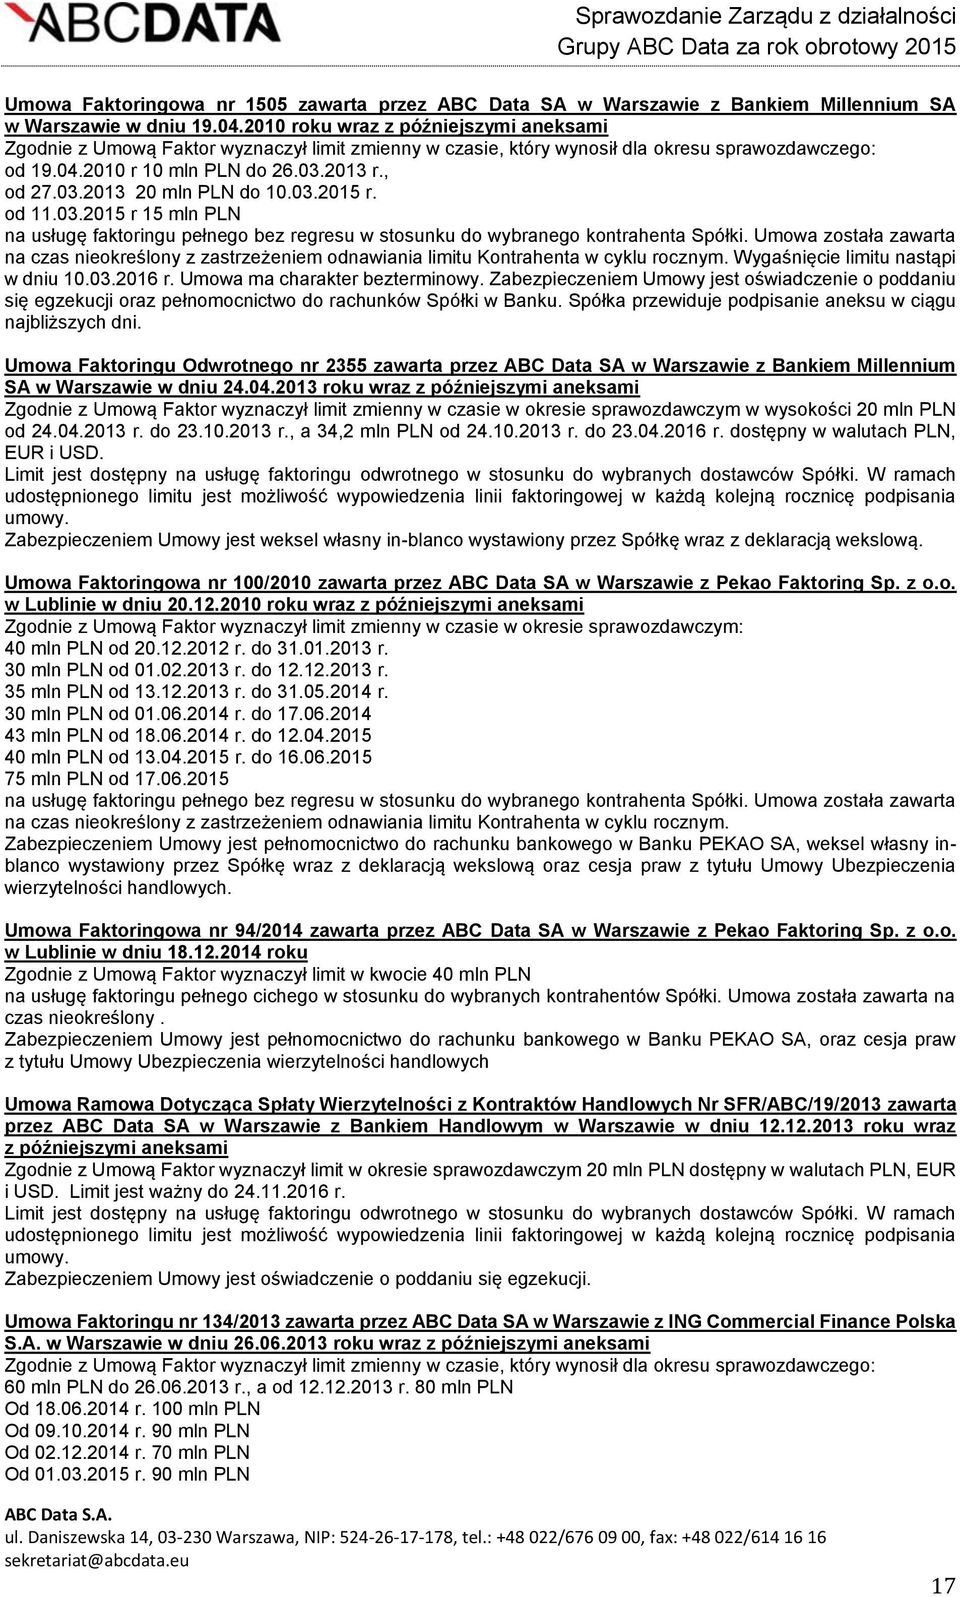 03.2015 r. od 11.03.2015 r 15 mln PLN na usługę faktoringu pełnego bez regresu w stosunku do wybranego kontrahenta Spółki.